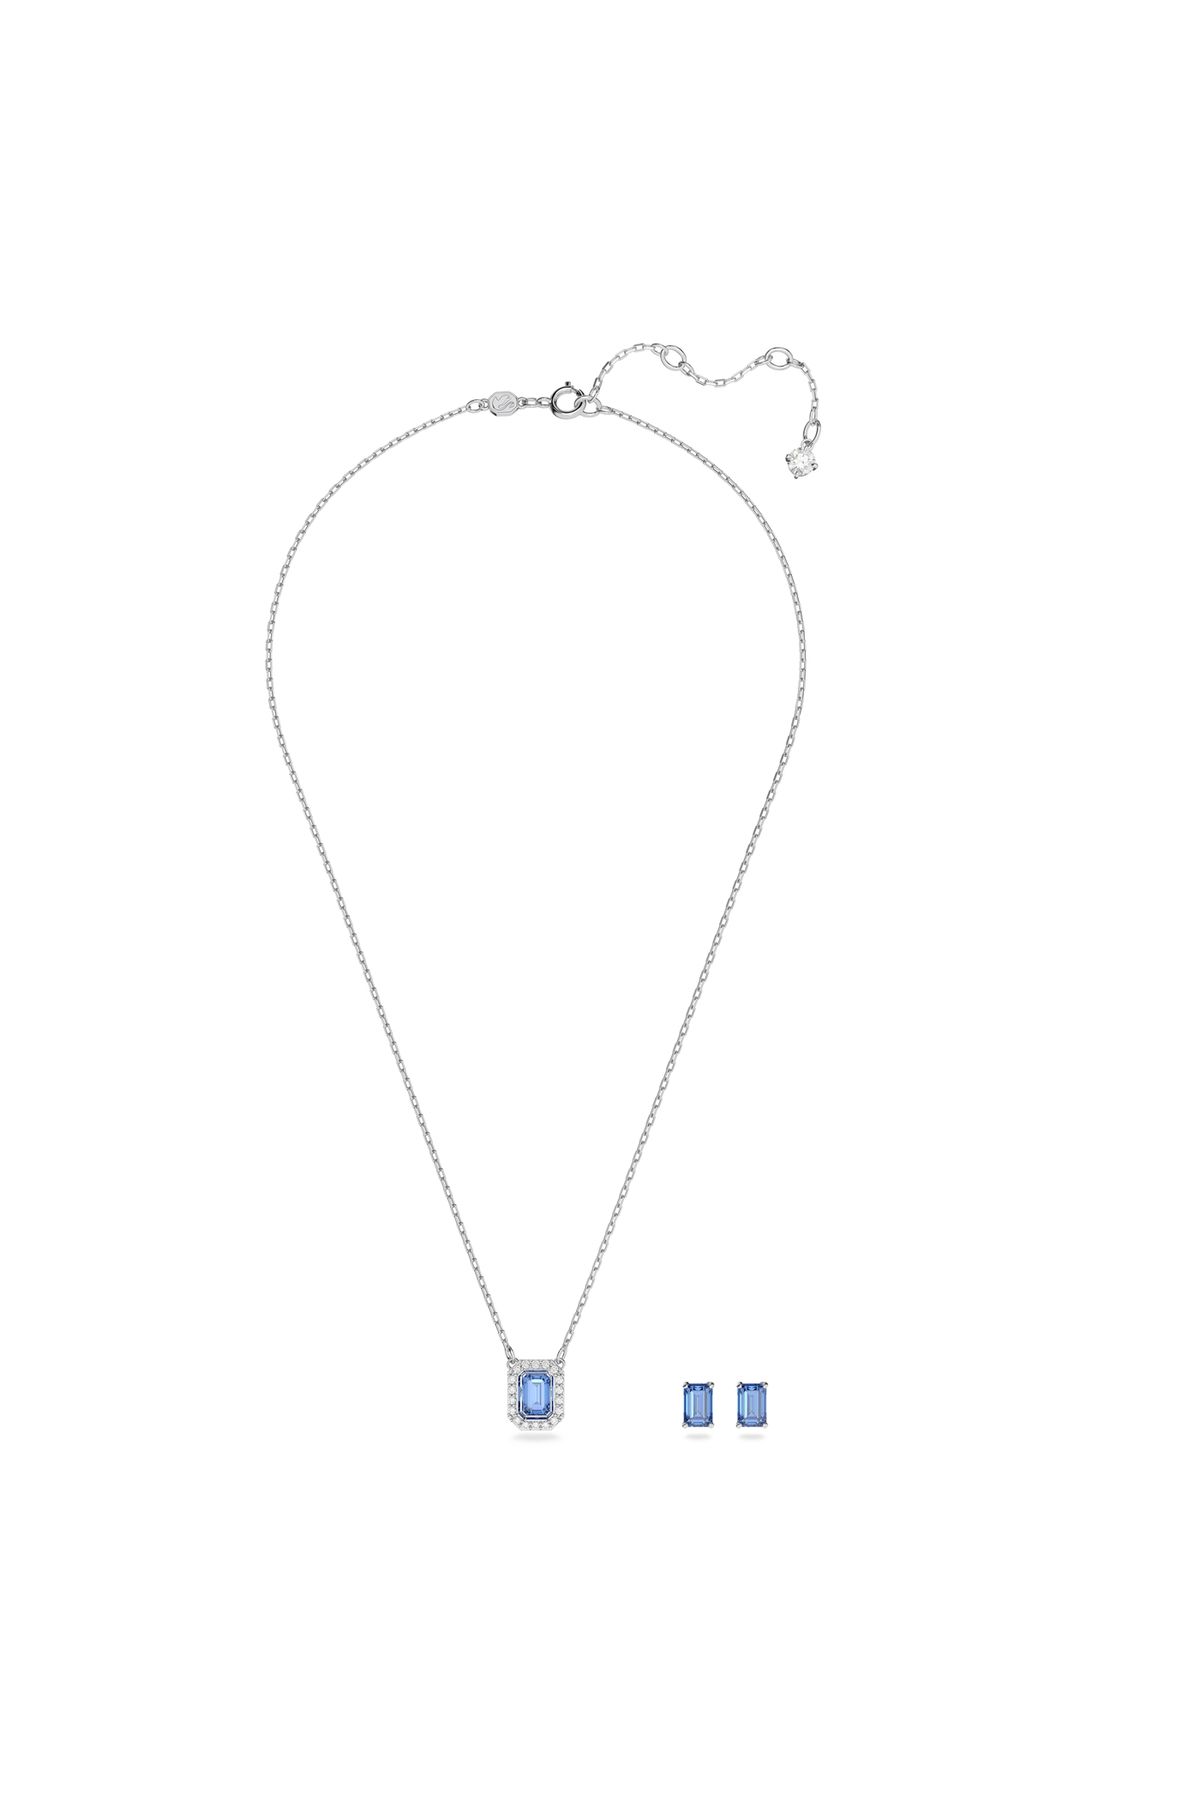 Swarovski Millenia Blaue Silber Geschenkset 5641171